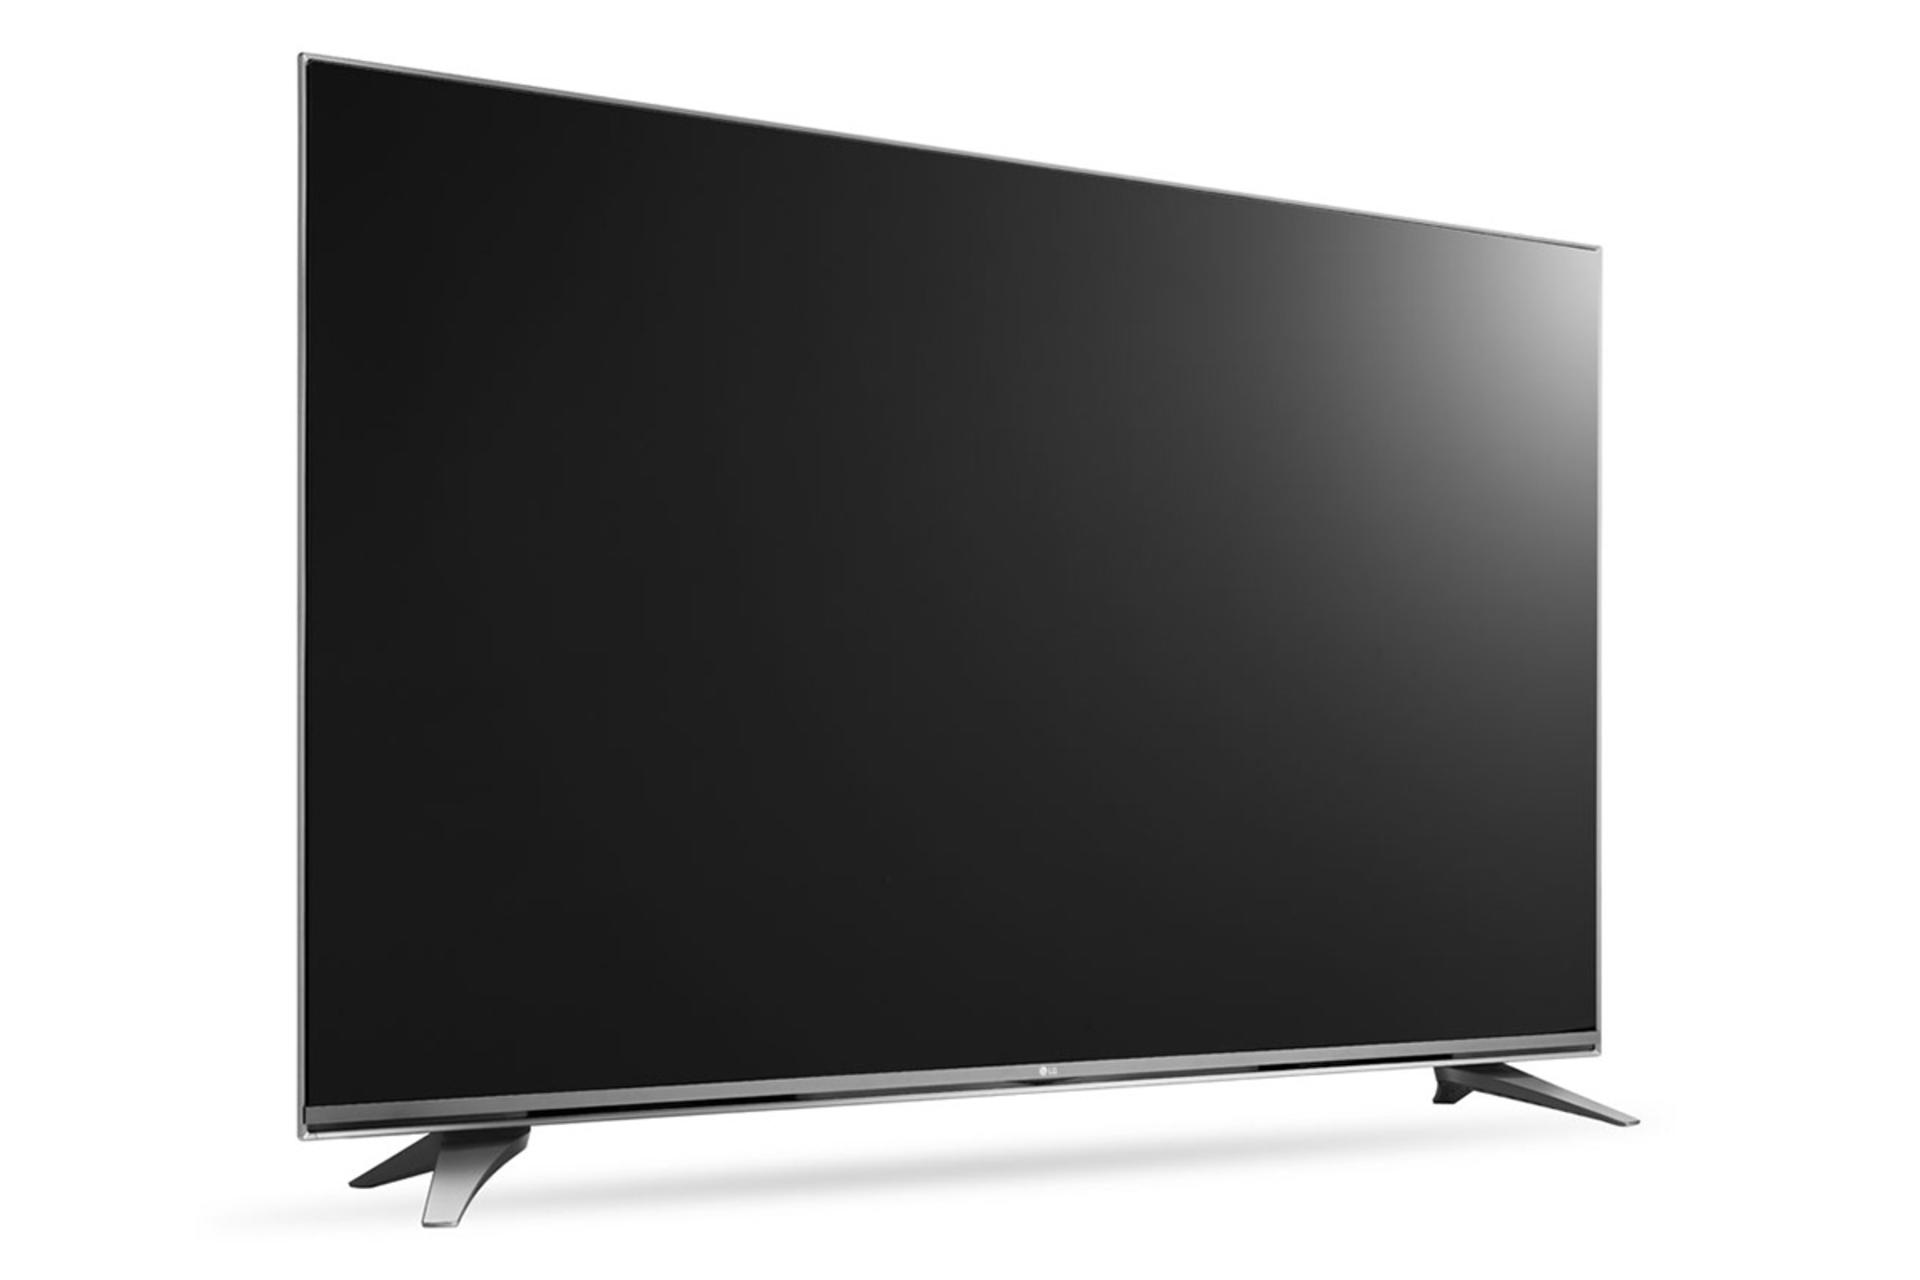 نمای نیمرخ تلویزیون ال جی UH750 مدل 43 اینچ با صفحه خاموش